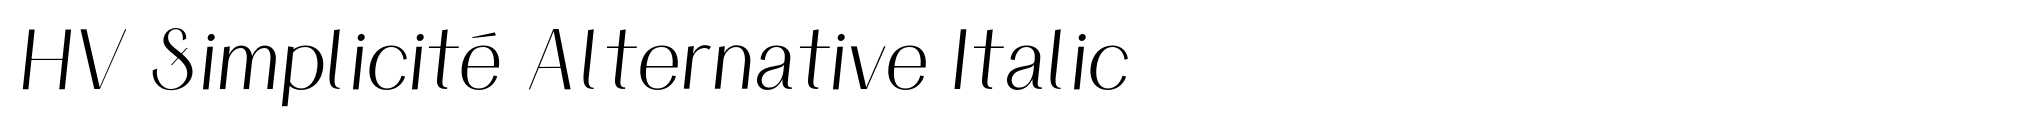 HV Simplicité Alternative Italic image